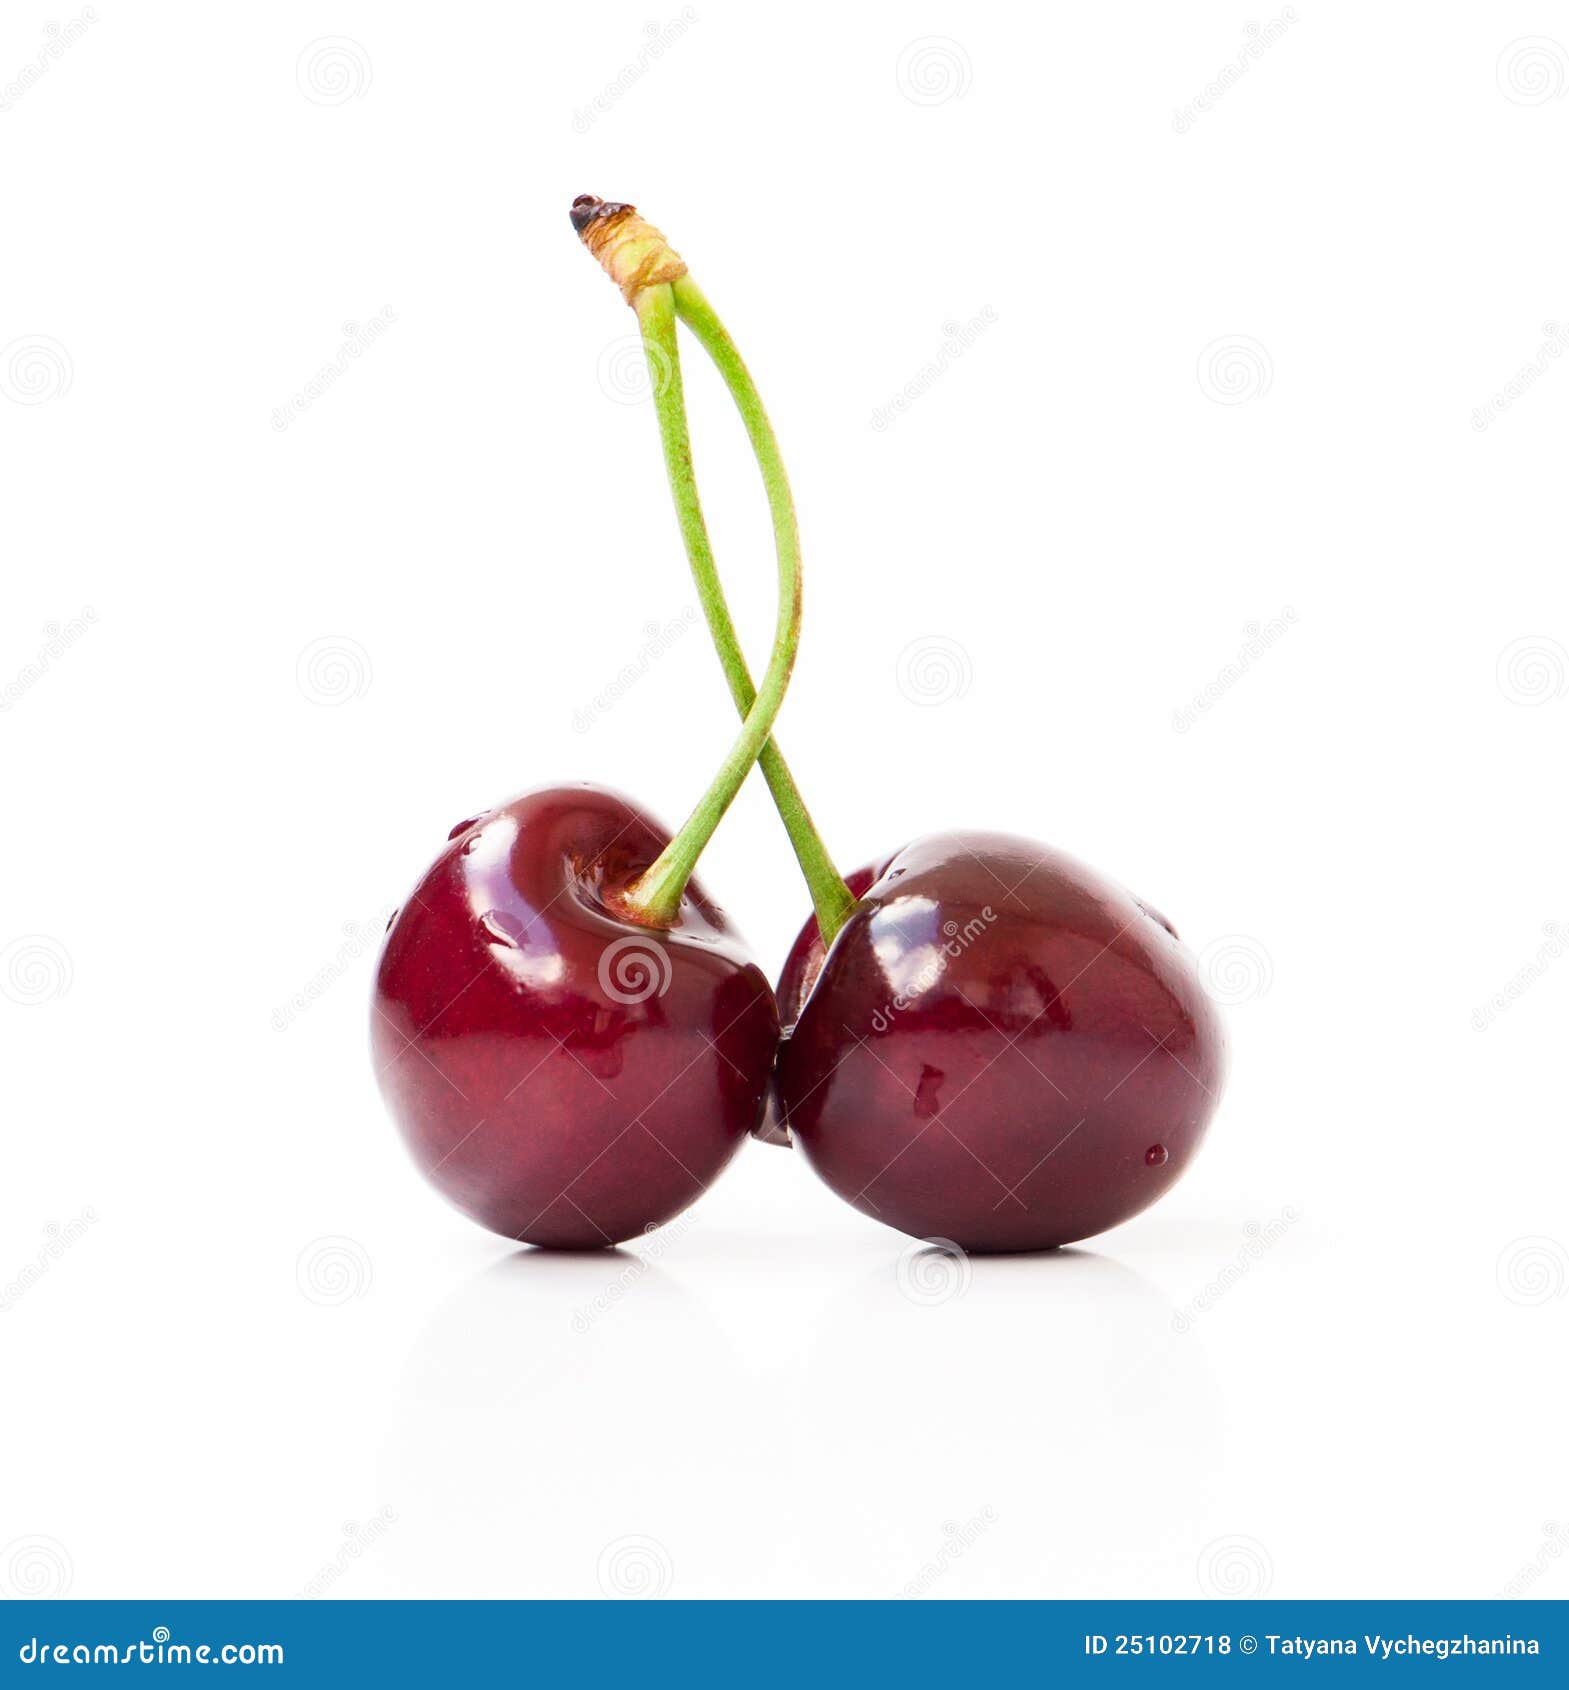 Red cherries stock photo. Image of detail, bright, dark - 25102718